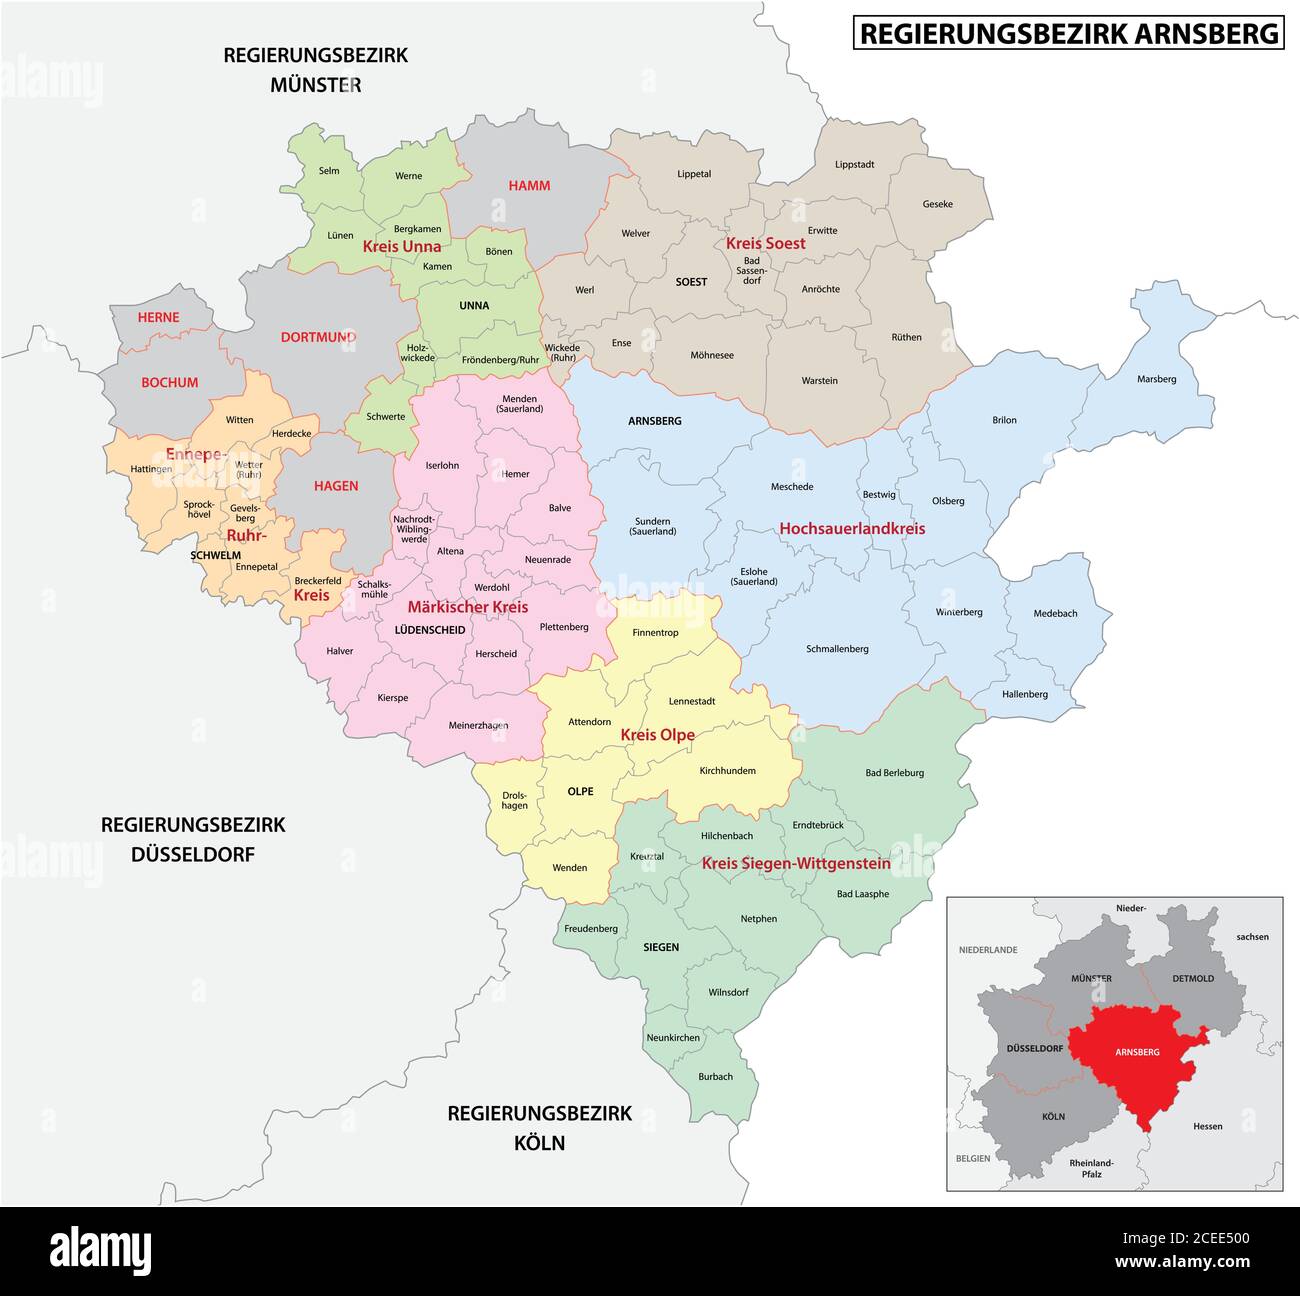 Carte vectorielle administrative de la région d'Arnsberg en allemand, Rhénanie-du-Nord-Westphalie, Allemagne Illustration de Vecteur